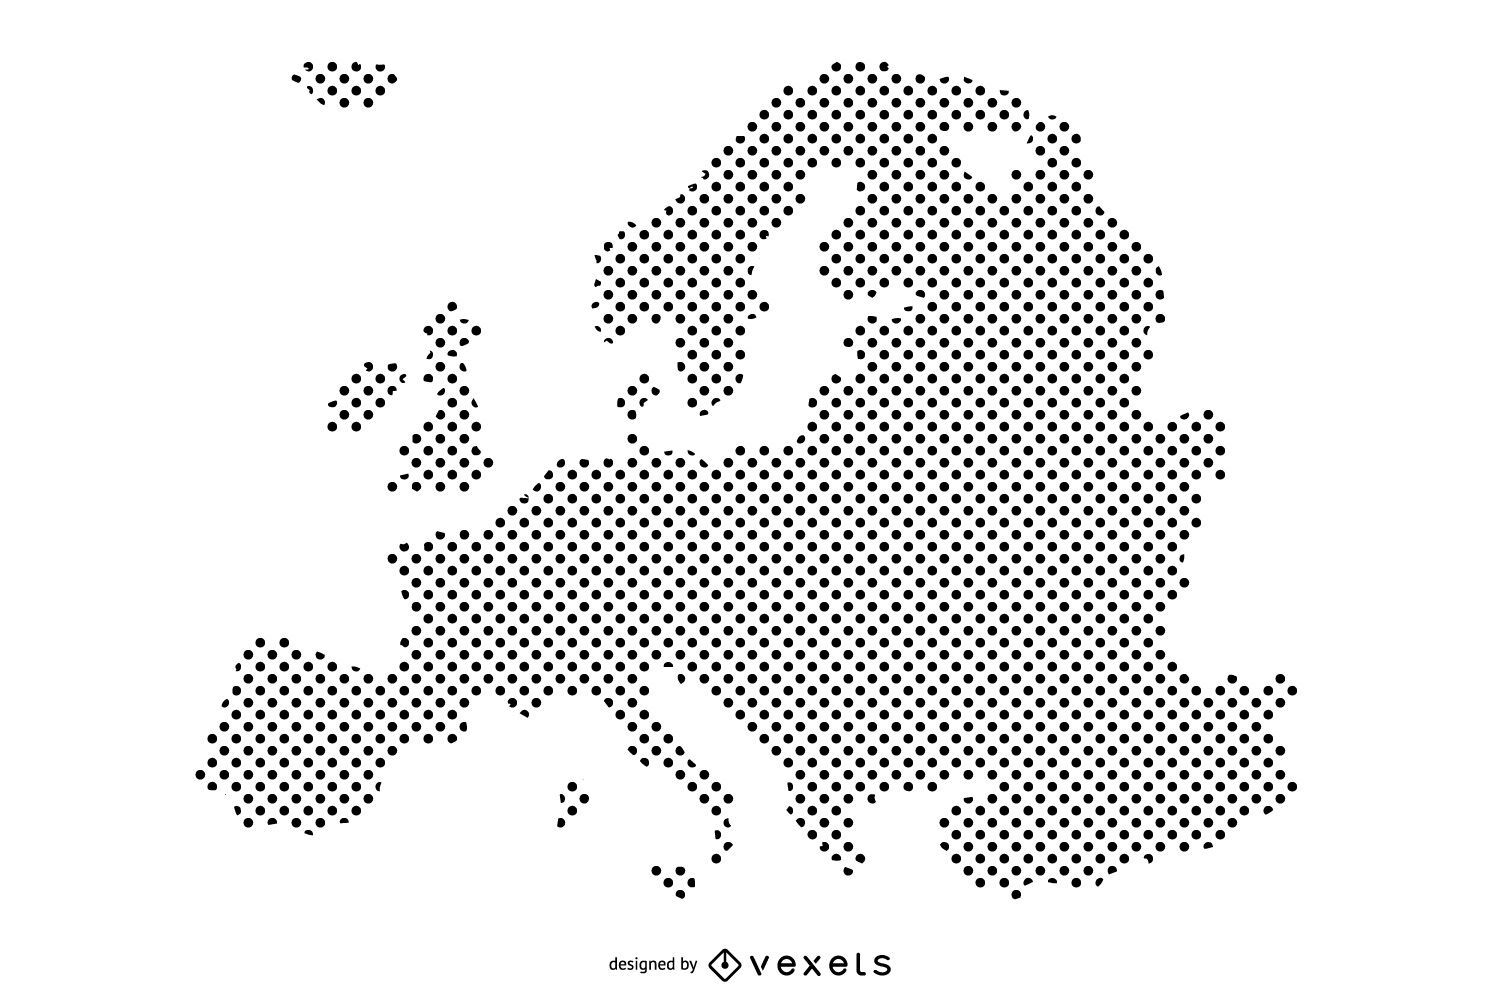 Dise?o de mapa de Europa con puntos